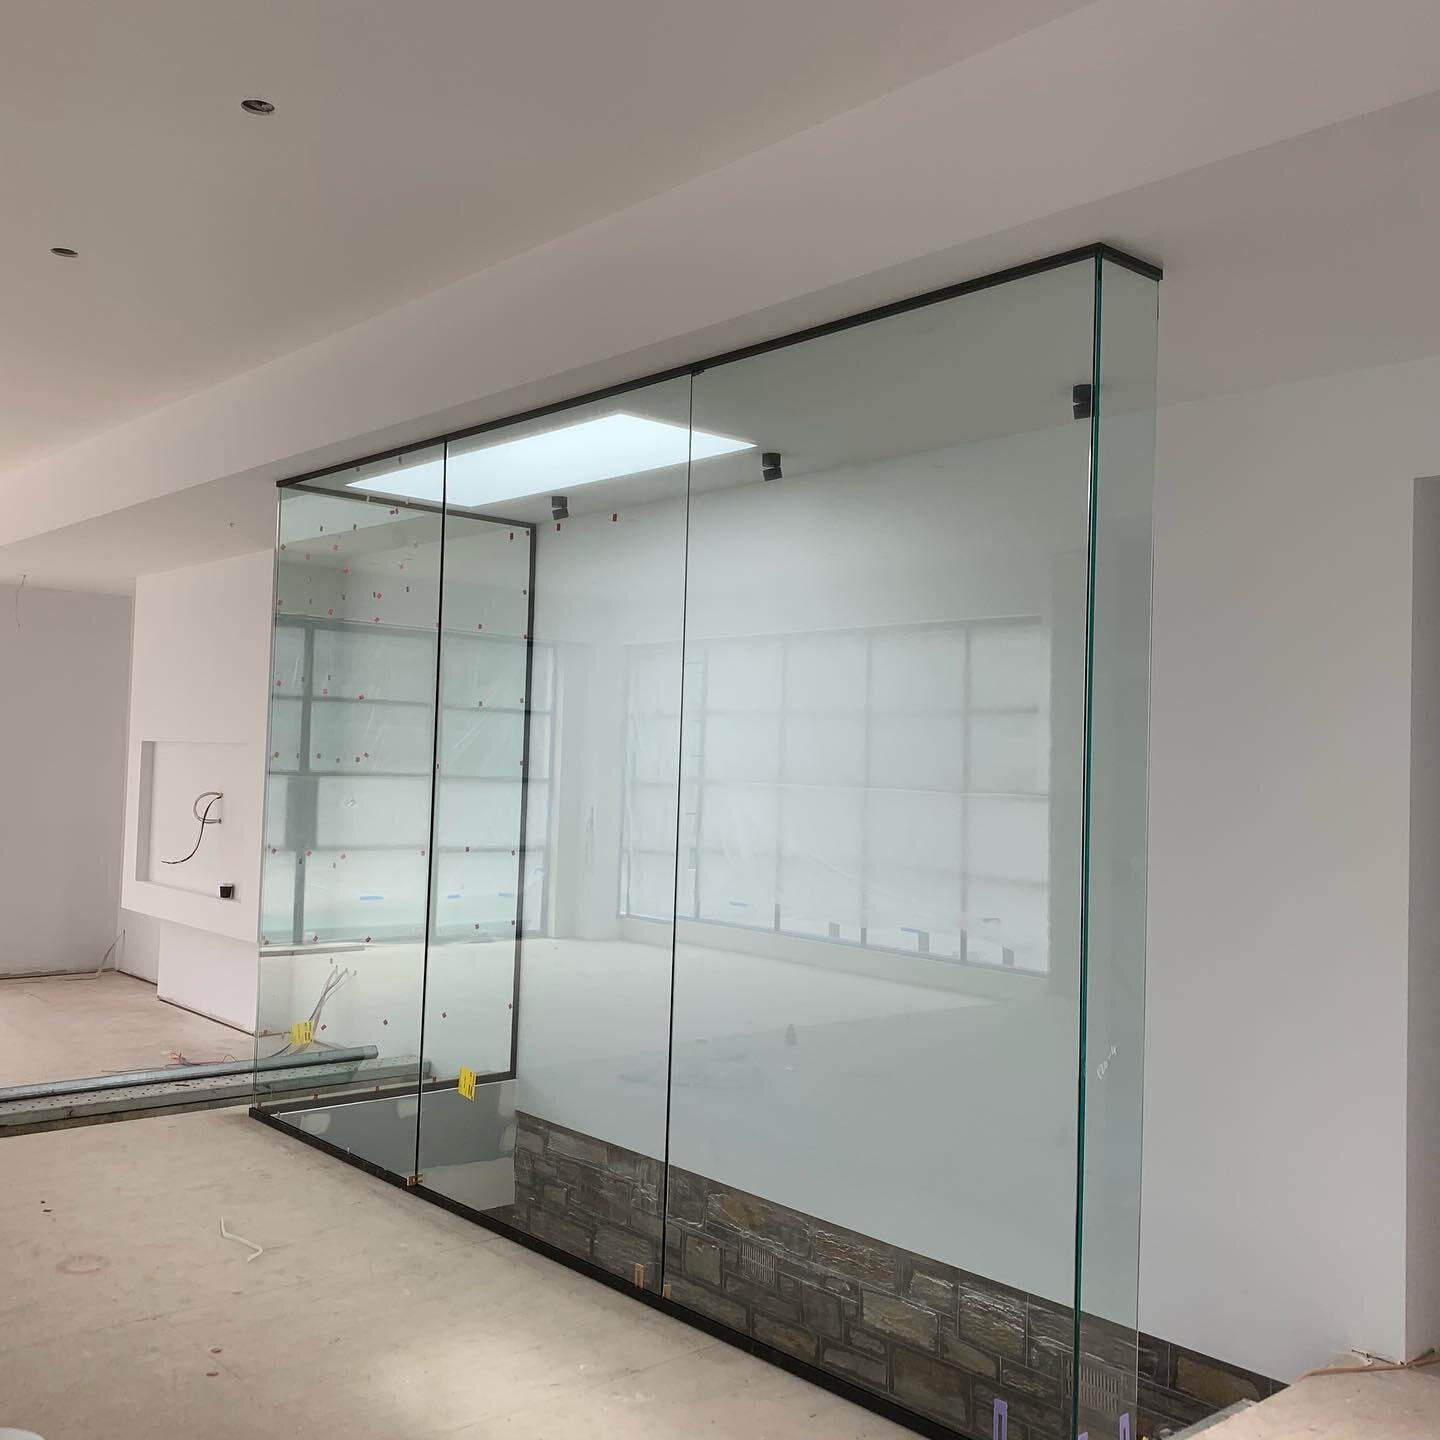 Bespoke glass wine cellar nearing completion 🔹🔹 #framelessglass #adelaidedesign